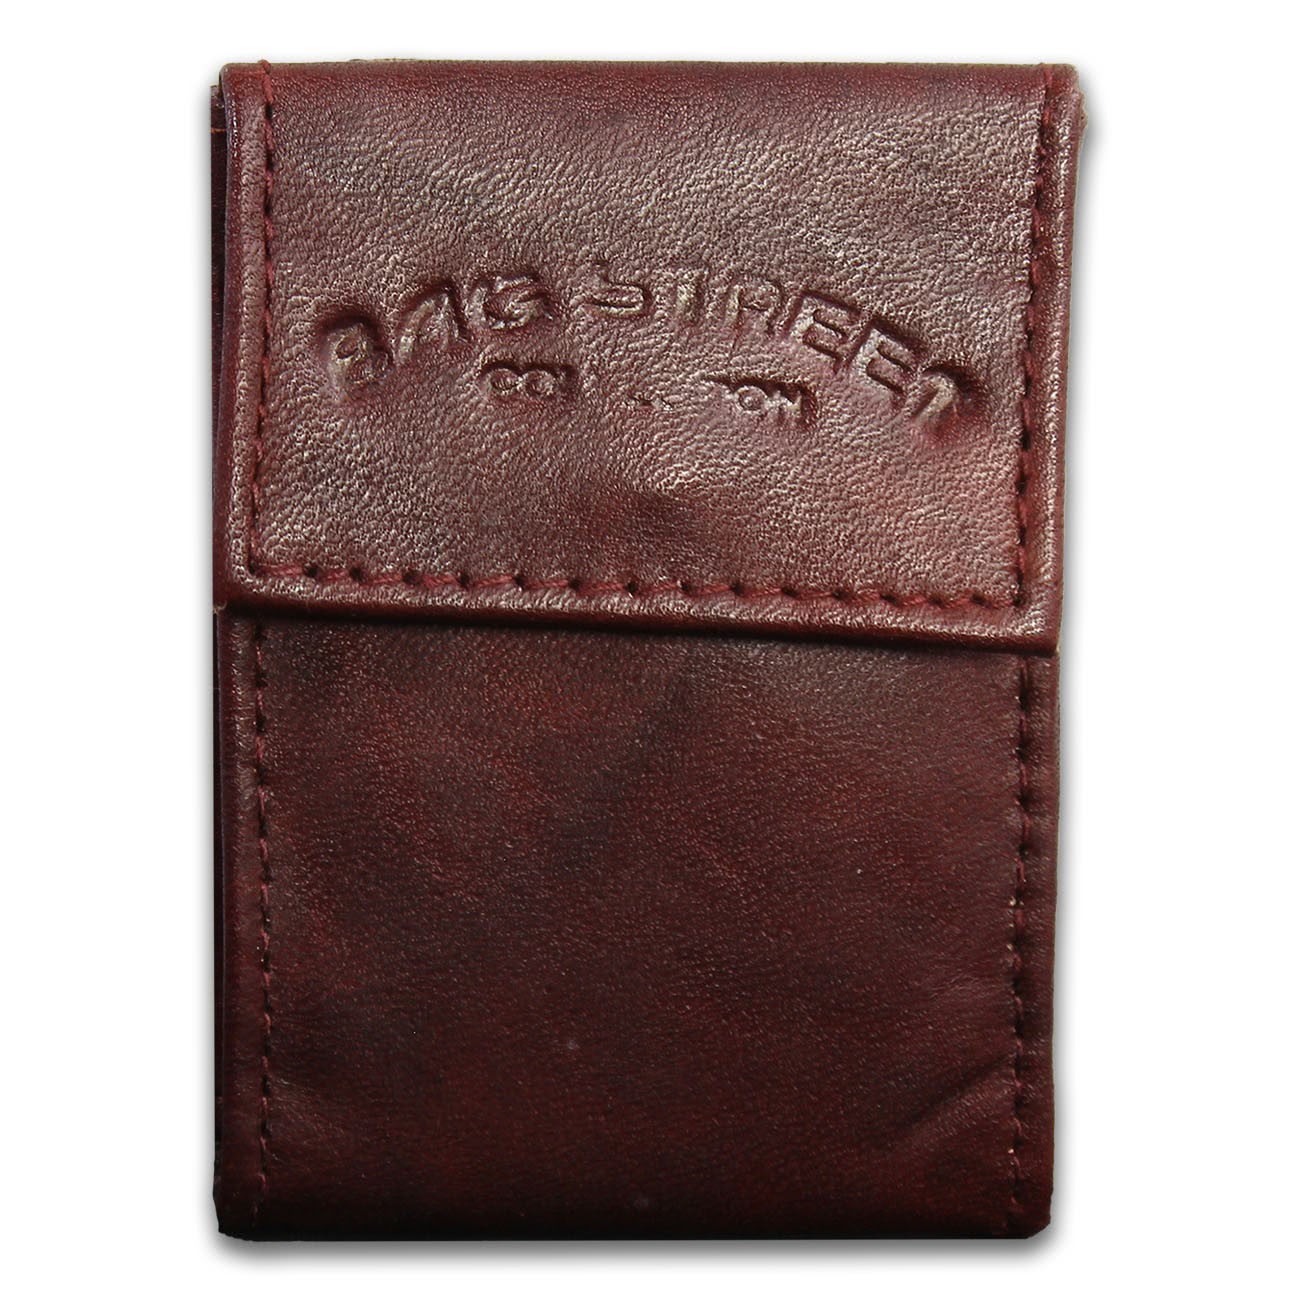 Bag Street kompakte Minibörse echtes Leder Geldbörse Portemonnaie braun OPJ801N